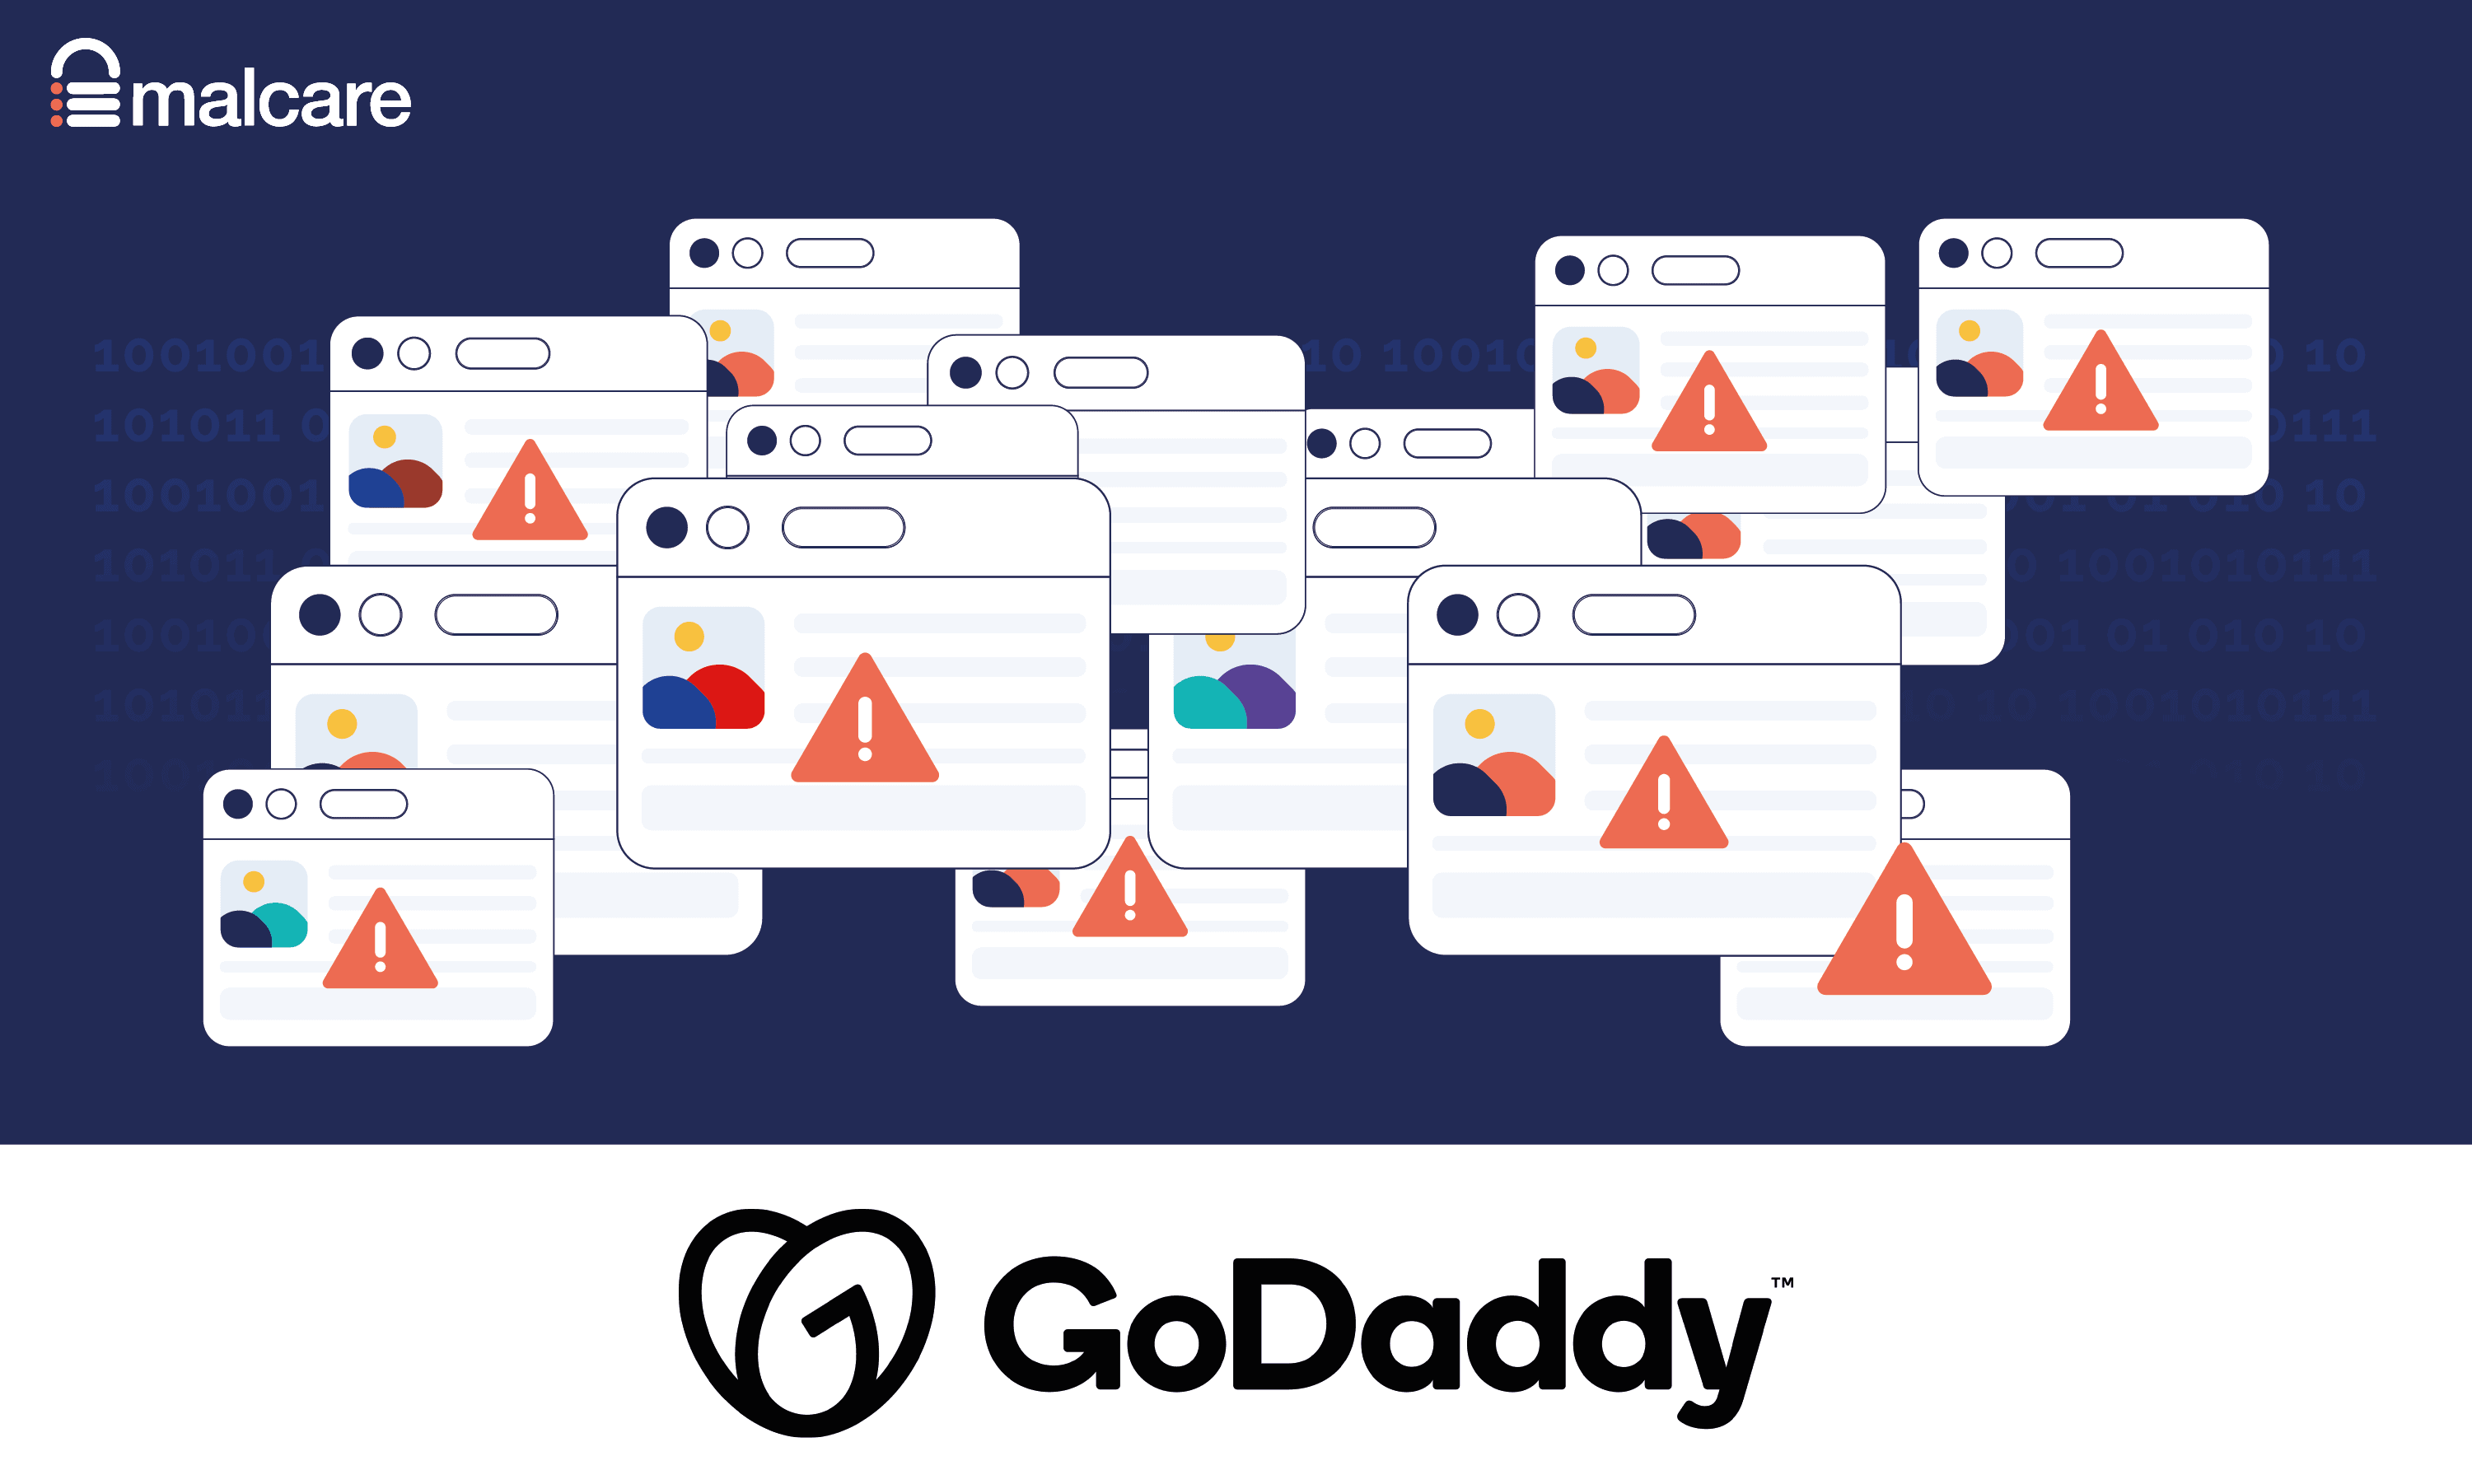 Godaddy data breach 2021